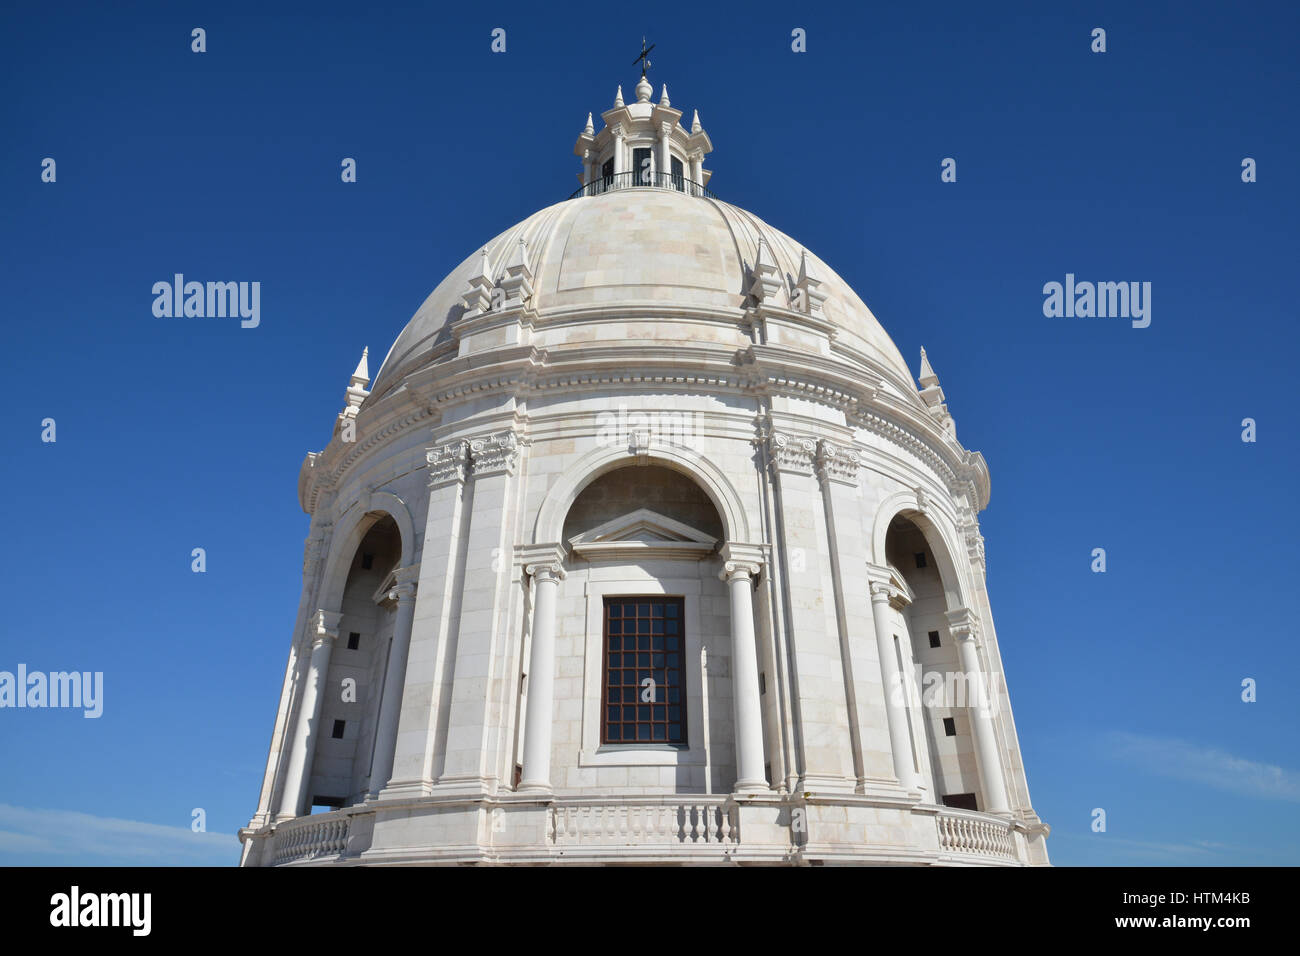 Panthéon national du Portugal magnifique dôme en marbre blanc à Lisbonne contre le ciel bleu (église de Santa Engracia) Banque D'Images